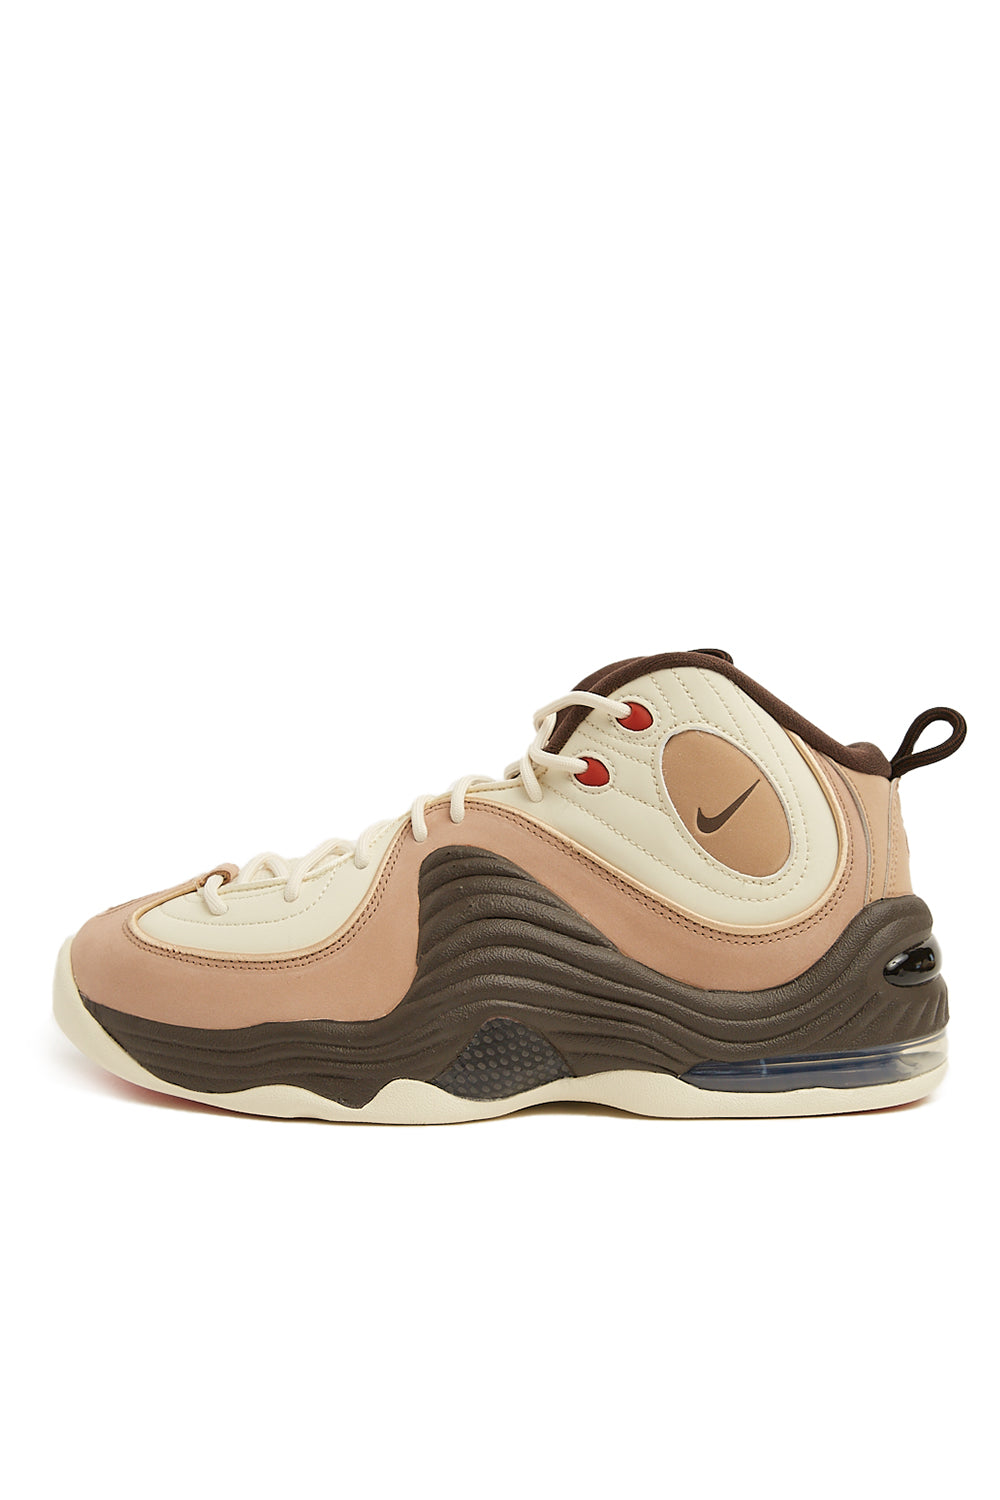 Nike Air Penny 2 Sneakers Coconut Milk / Baroque Brown